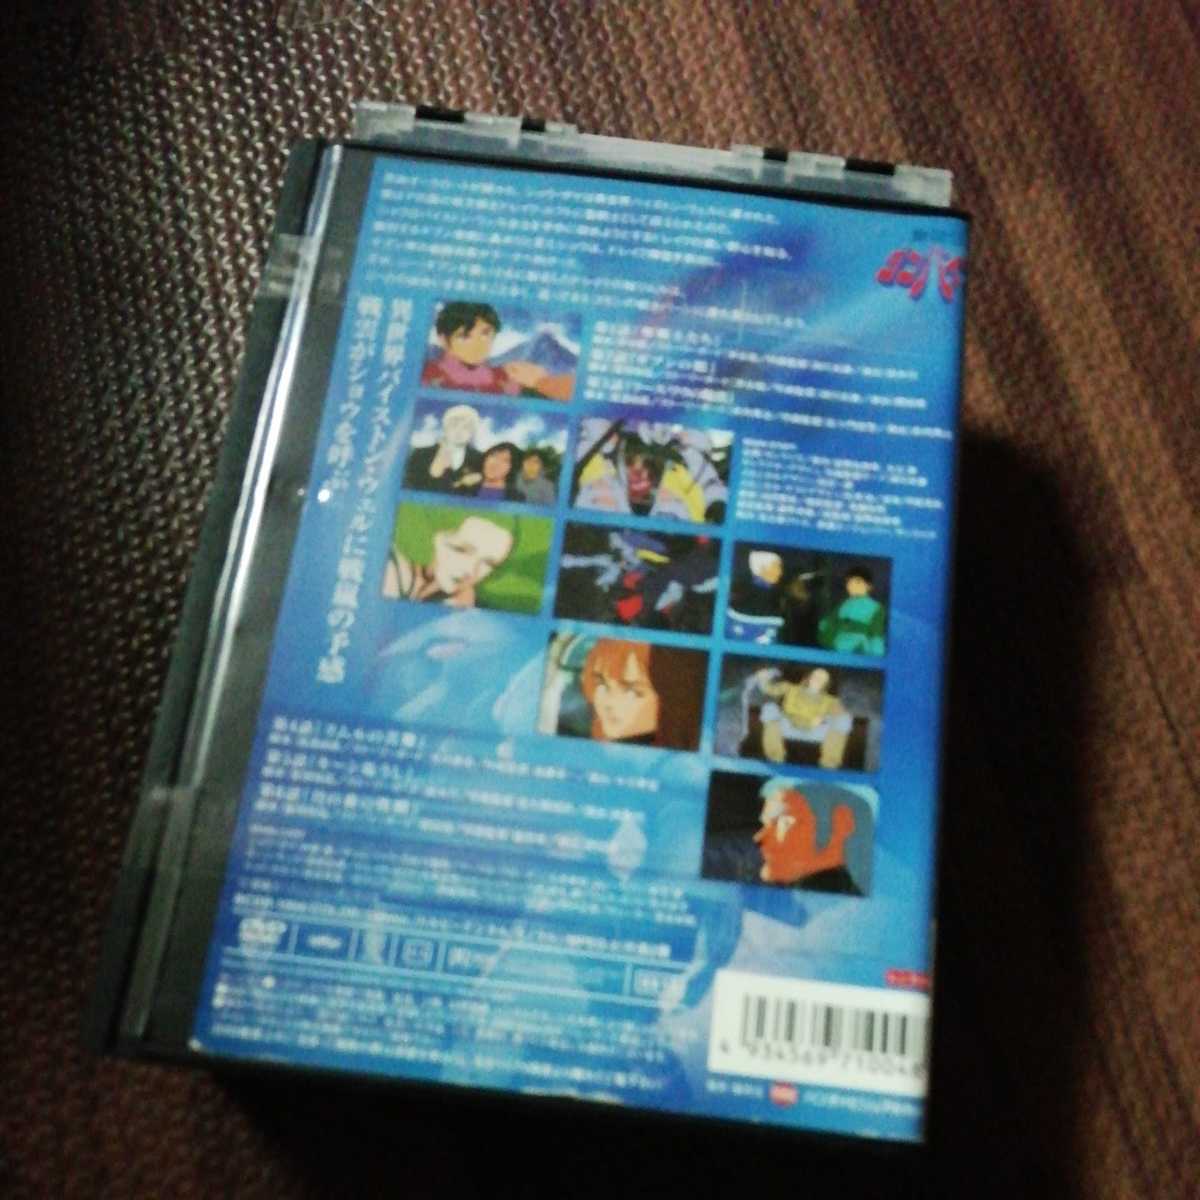 聖戦士ダンバイン DVD 全9巻セット www.numidex.com